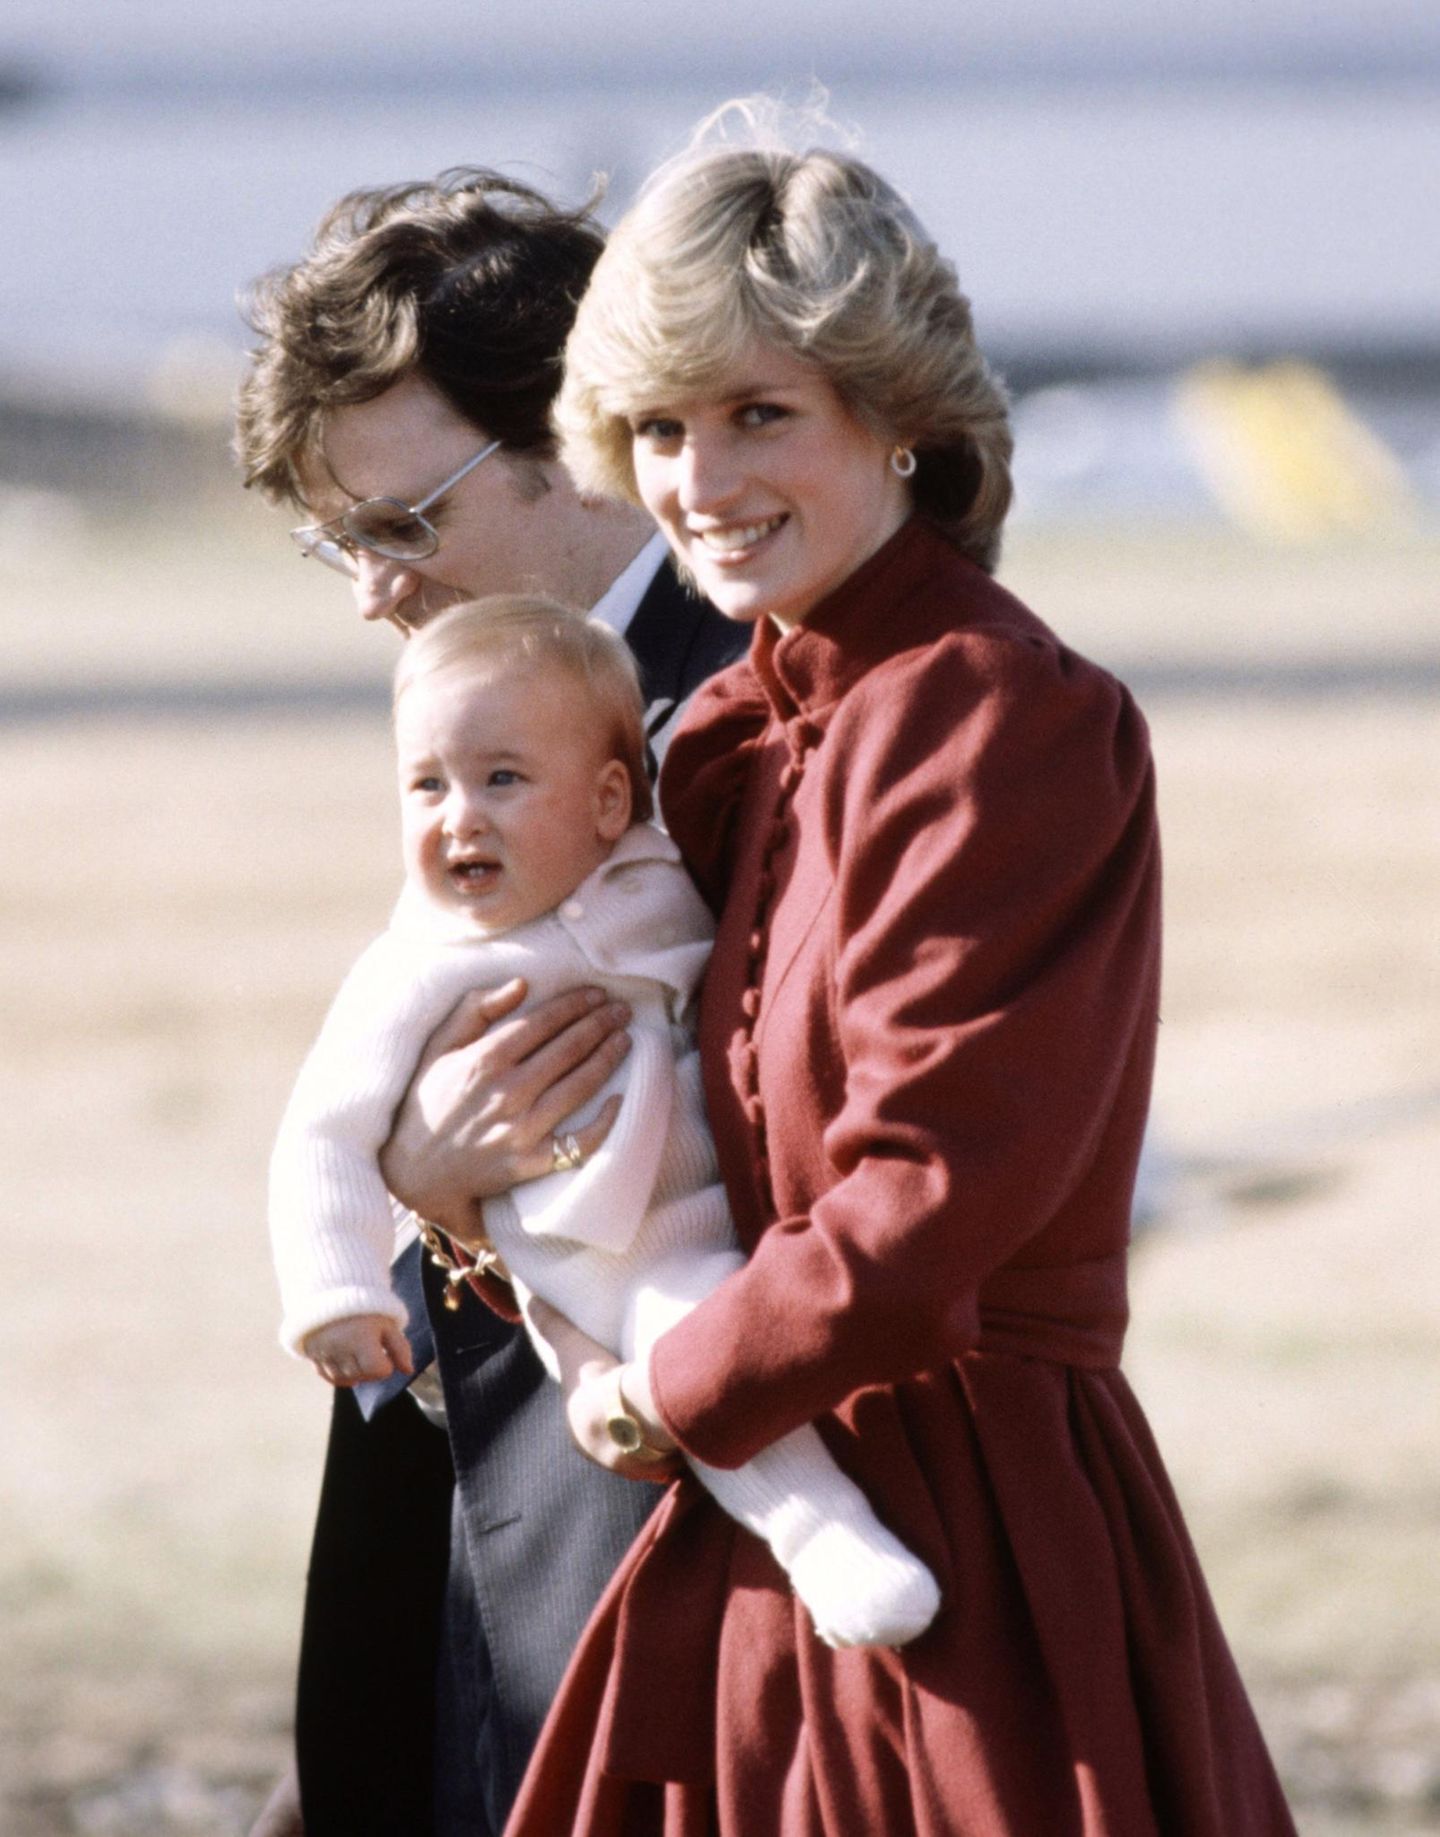 Prinzessin Diana trägt ihren Erstgeborenen, der rund acht Monate alt ist, auf dem Arm. Wie sah ihr Enkelsohn in diesem Alter aus?